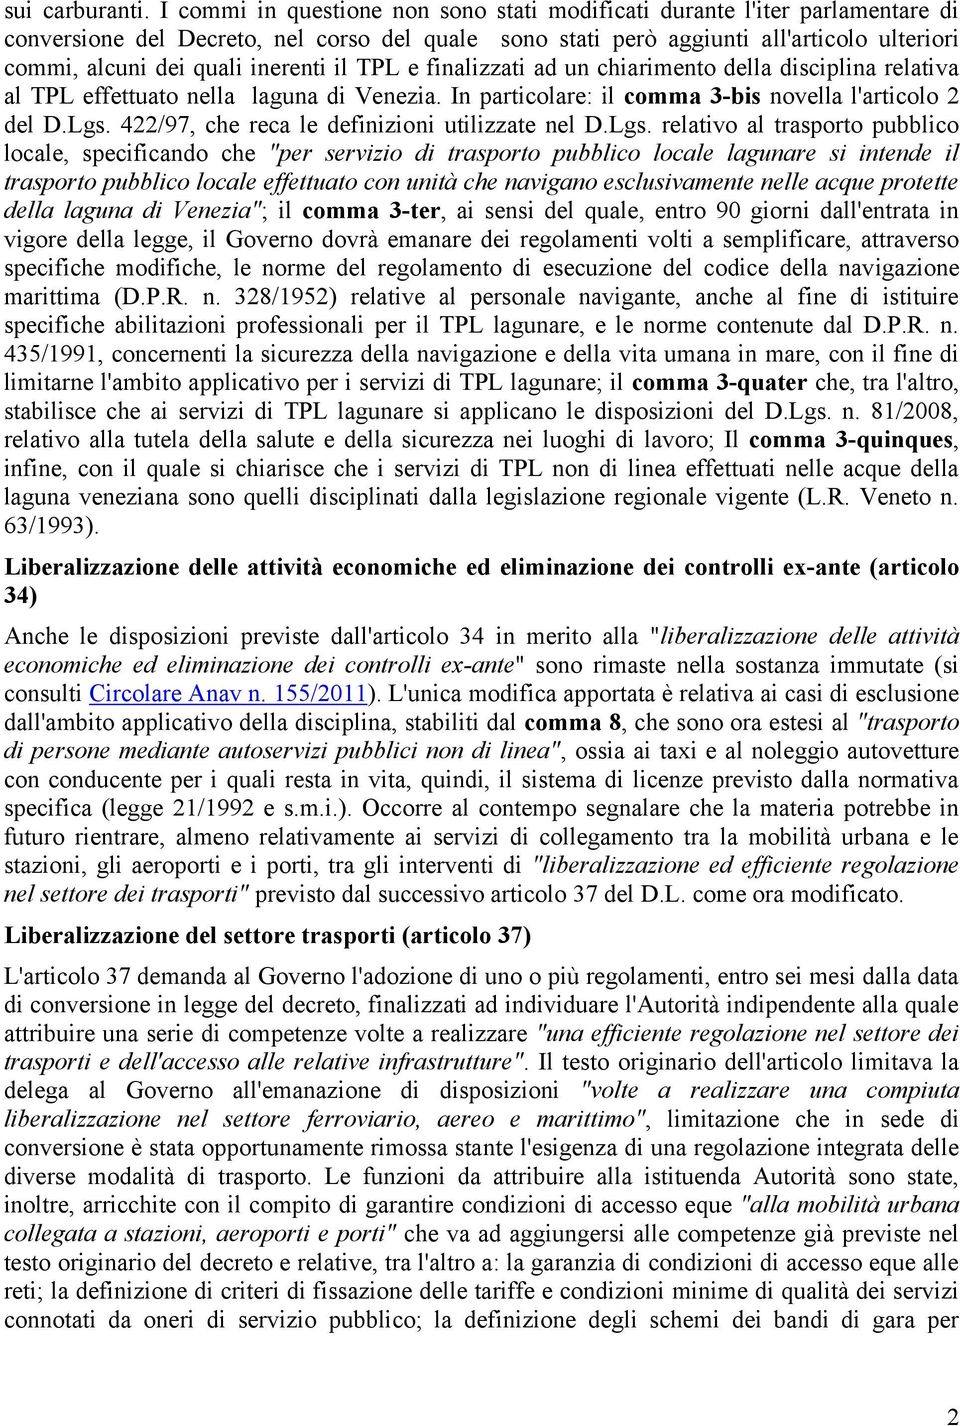 inerenti il TPL e finalizzati ad un chiarimento della disciplina relativa al TPL effettuato nella laguna di Venezia. In particolare: il comma 3-bis novella l'articolo 2 del D.Lgs.